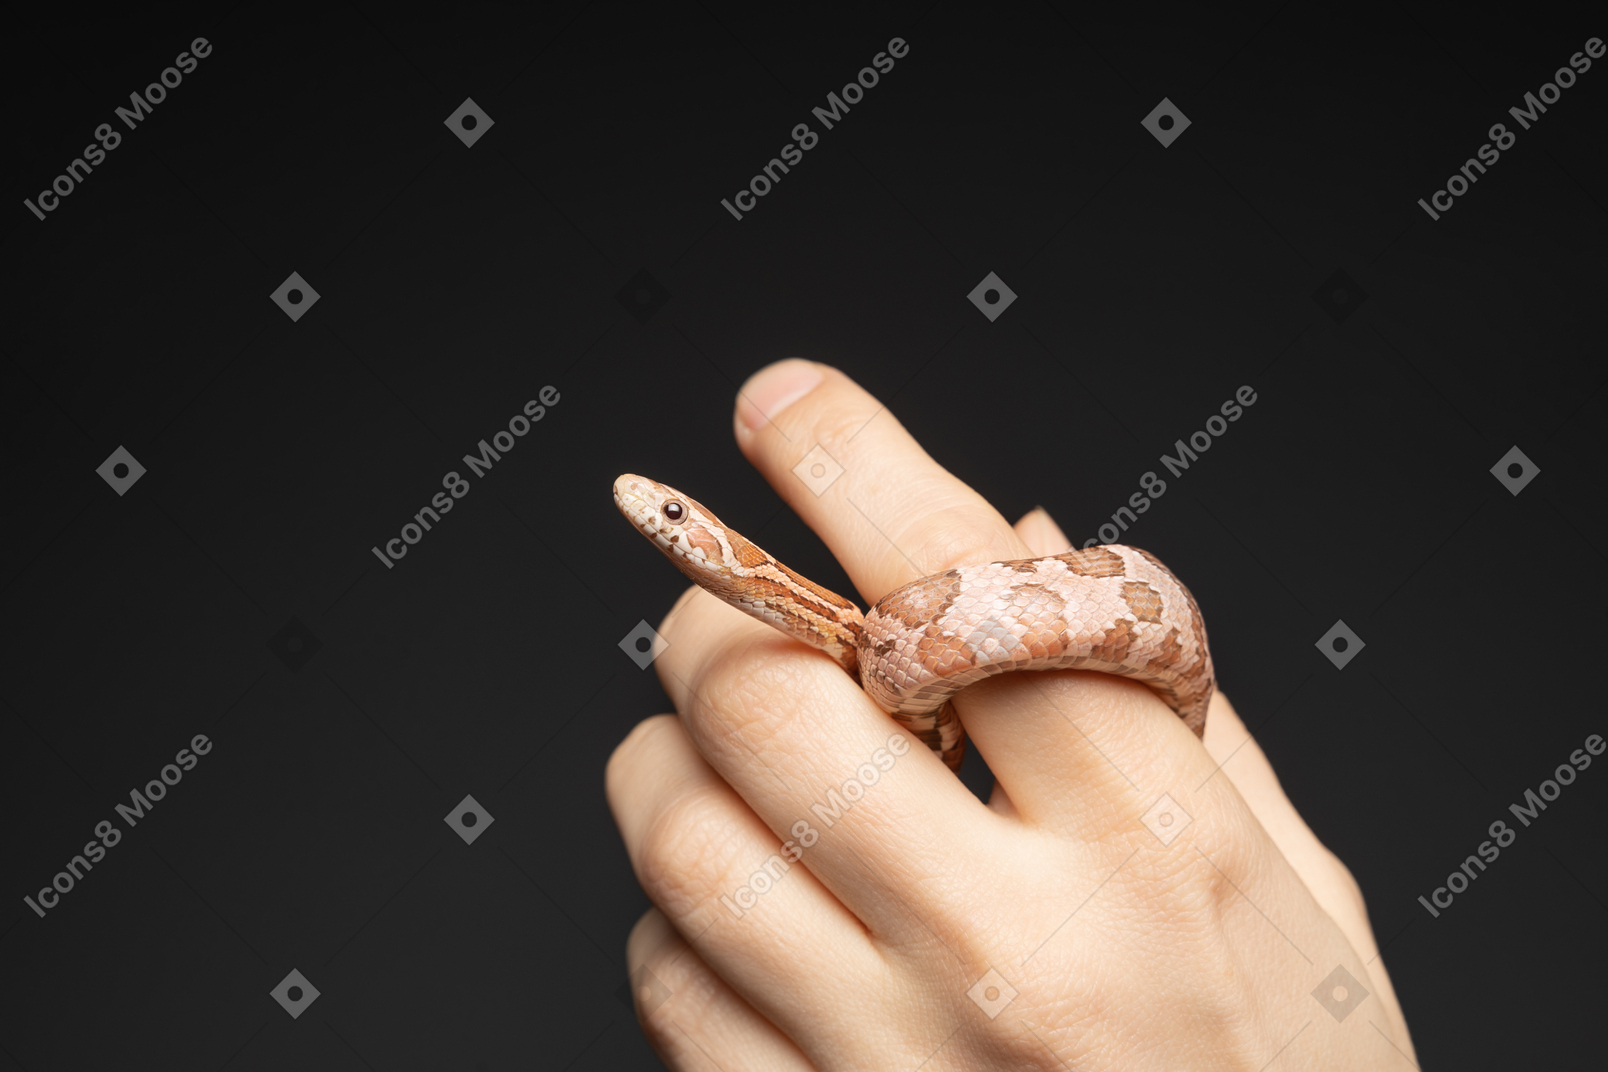 Piccolo serpente di mais che curva intorno al dito umano